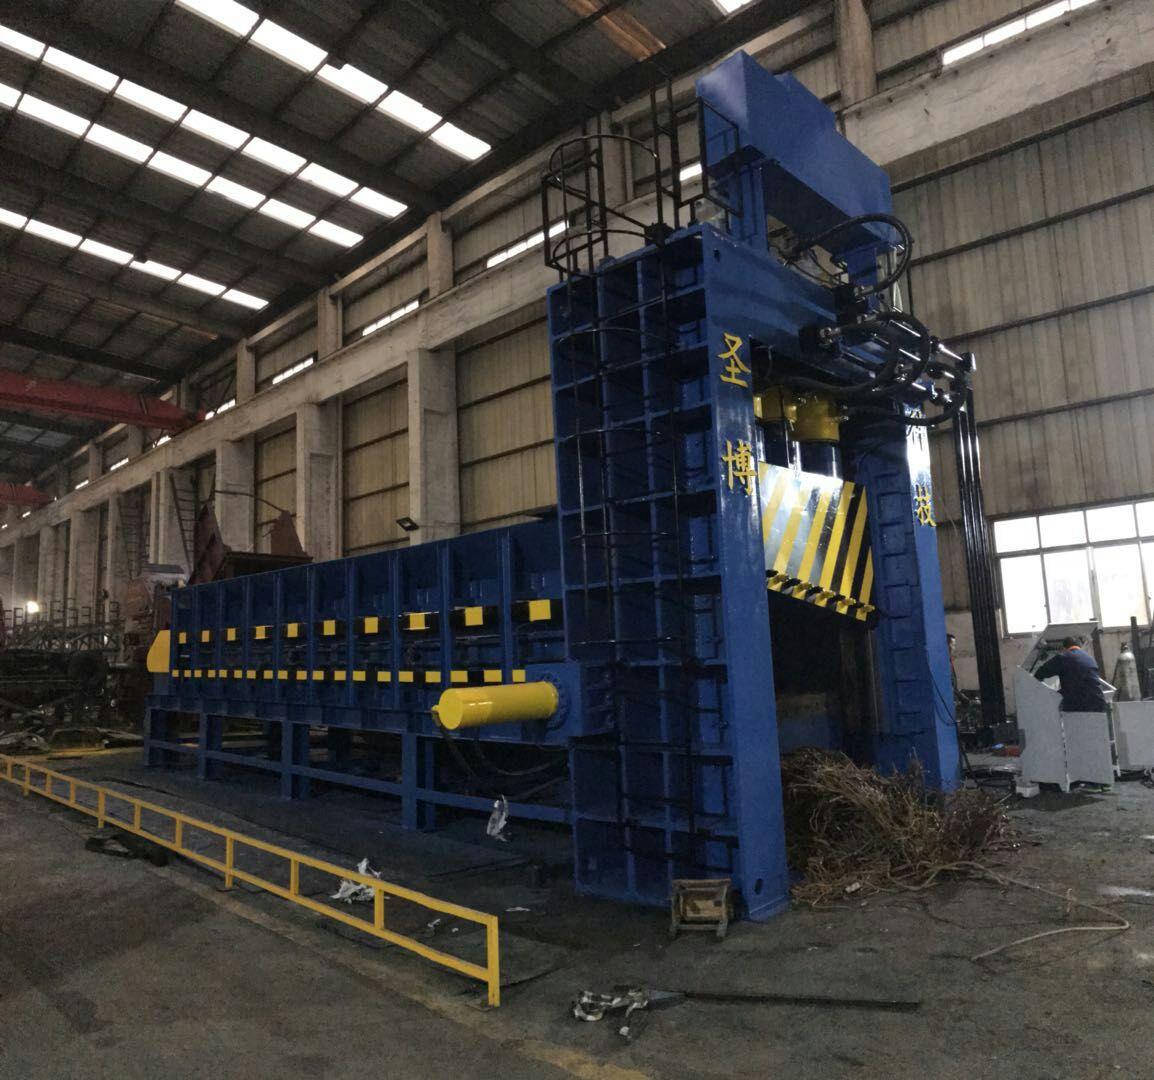 广州自动化废钢剪切机制造厂